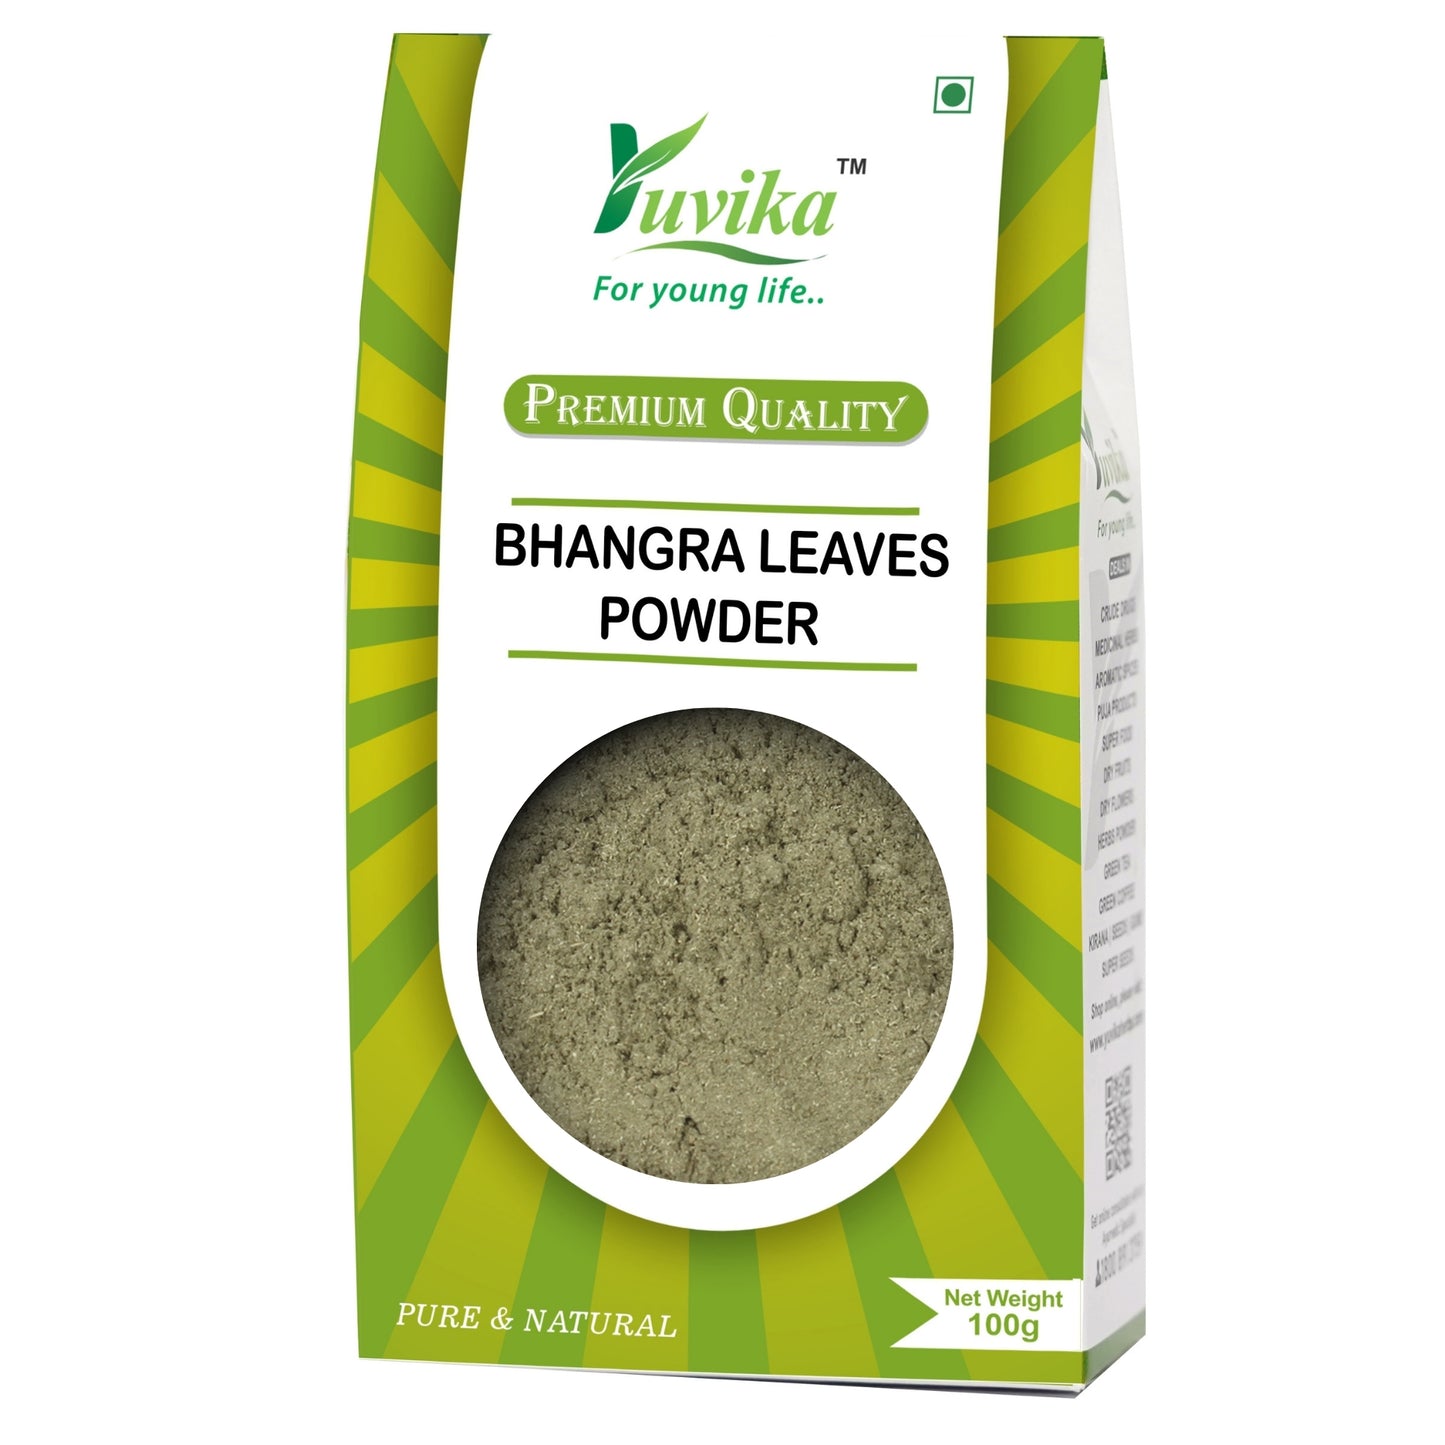 Bhangra Leaves Powder - Bringraj Powder - Eclipta Alba (100g)